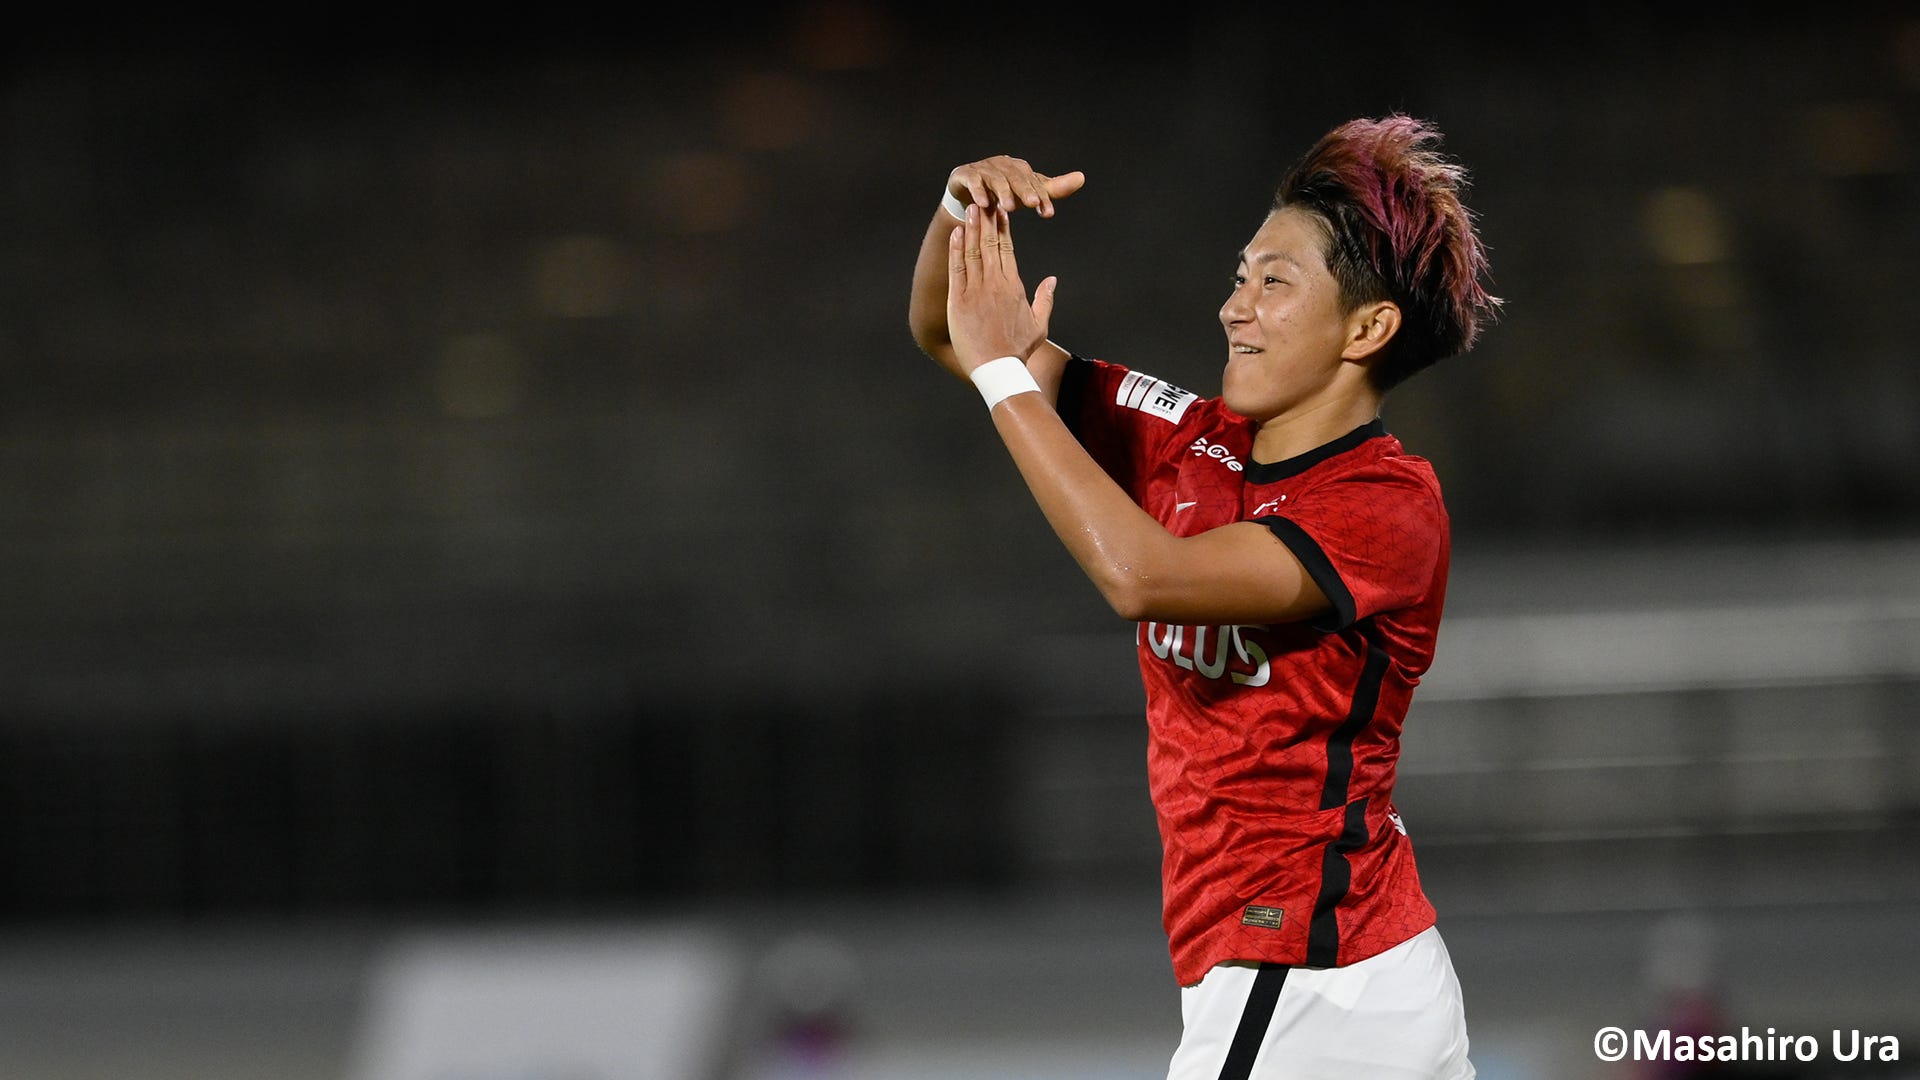 Weリーグ第2節で浦和が唯一の連勝 初登場の千葉lはel埼玉とドロー Goal Com 日本